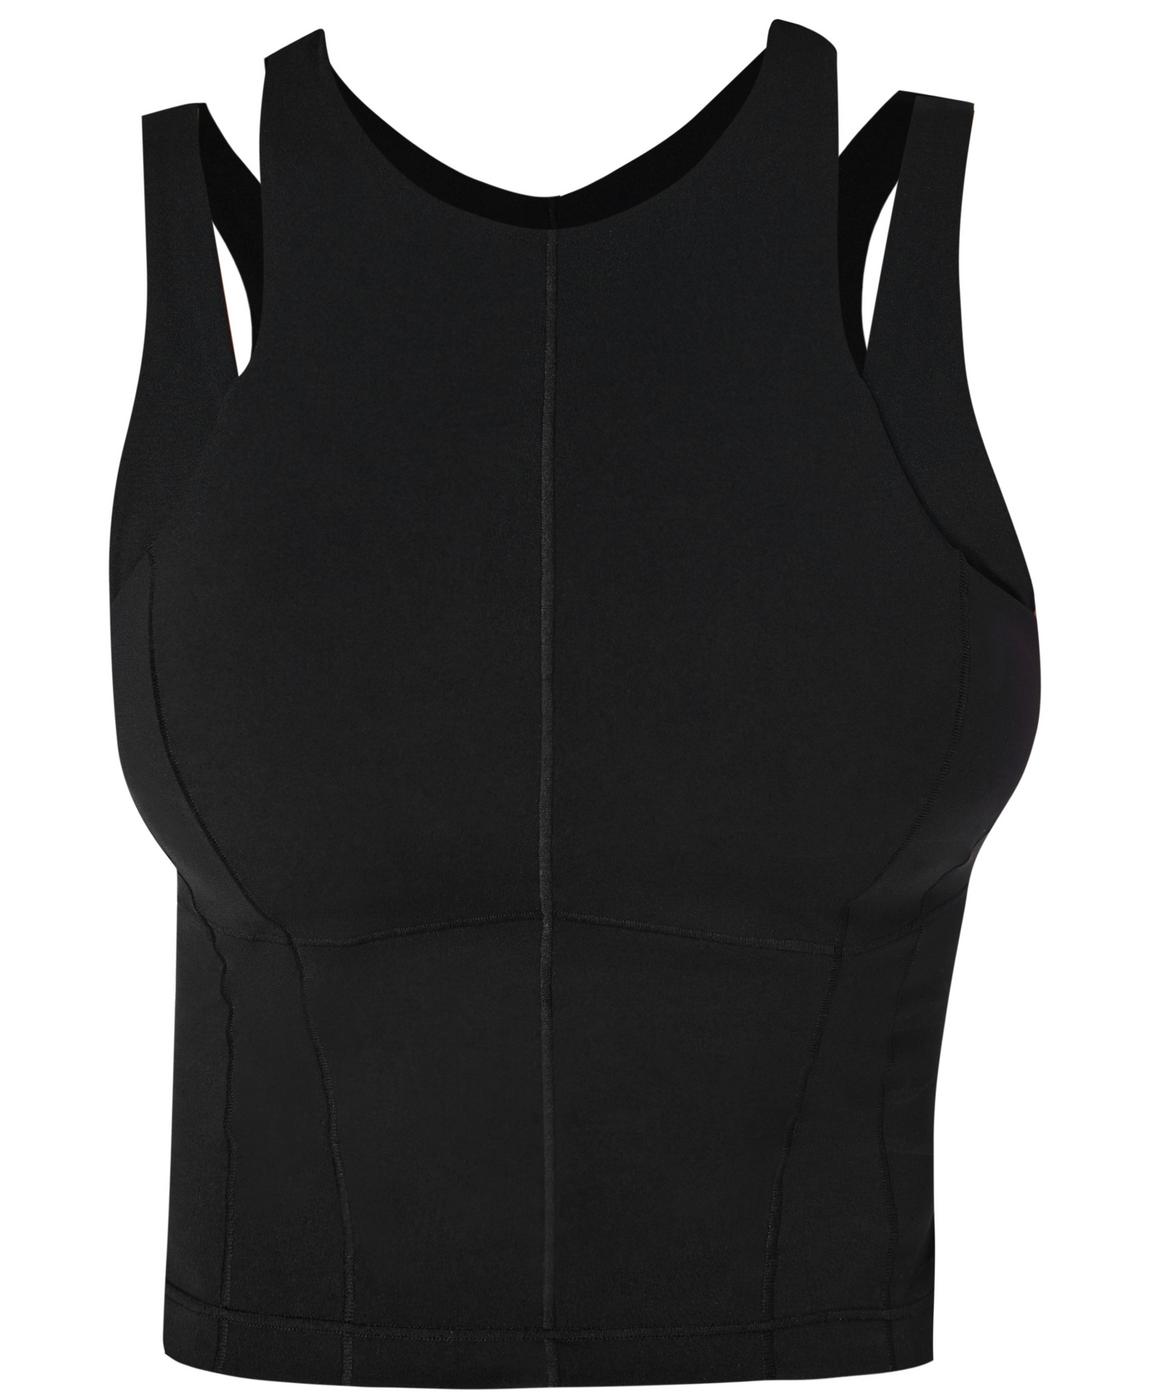 Power Contour Workout Tank Top - Black, Women's Vests